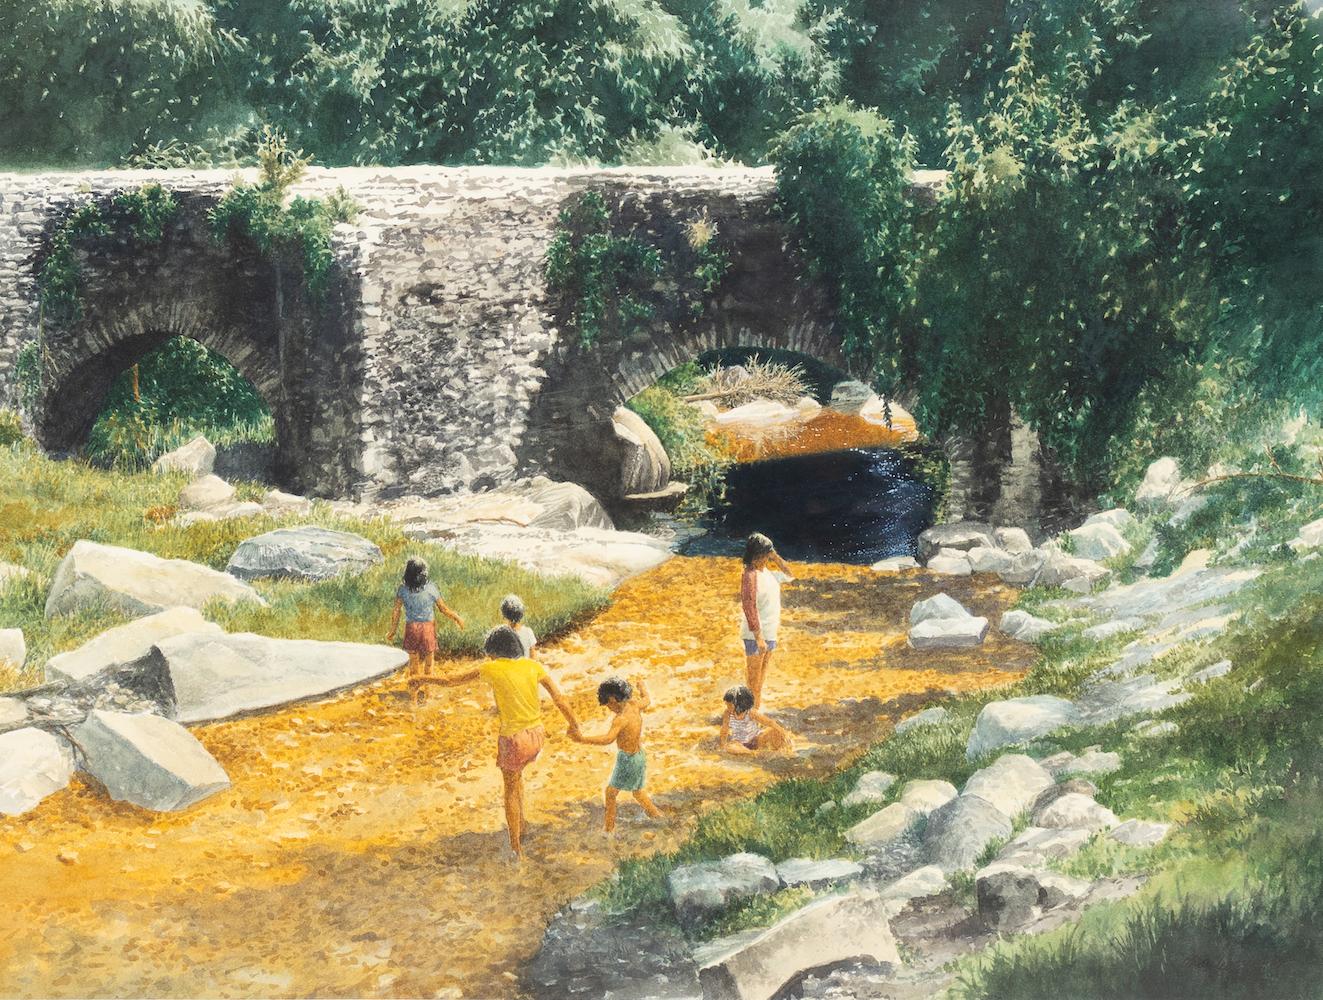 Landscape Art Charles Shaw - « Children in a Creek » - Paysage ensoleillé ludique, pont d'eau, forêt, rochers heureux